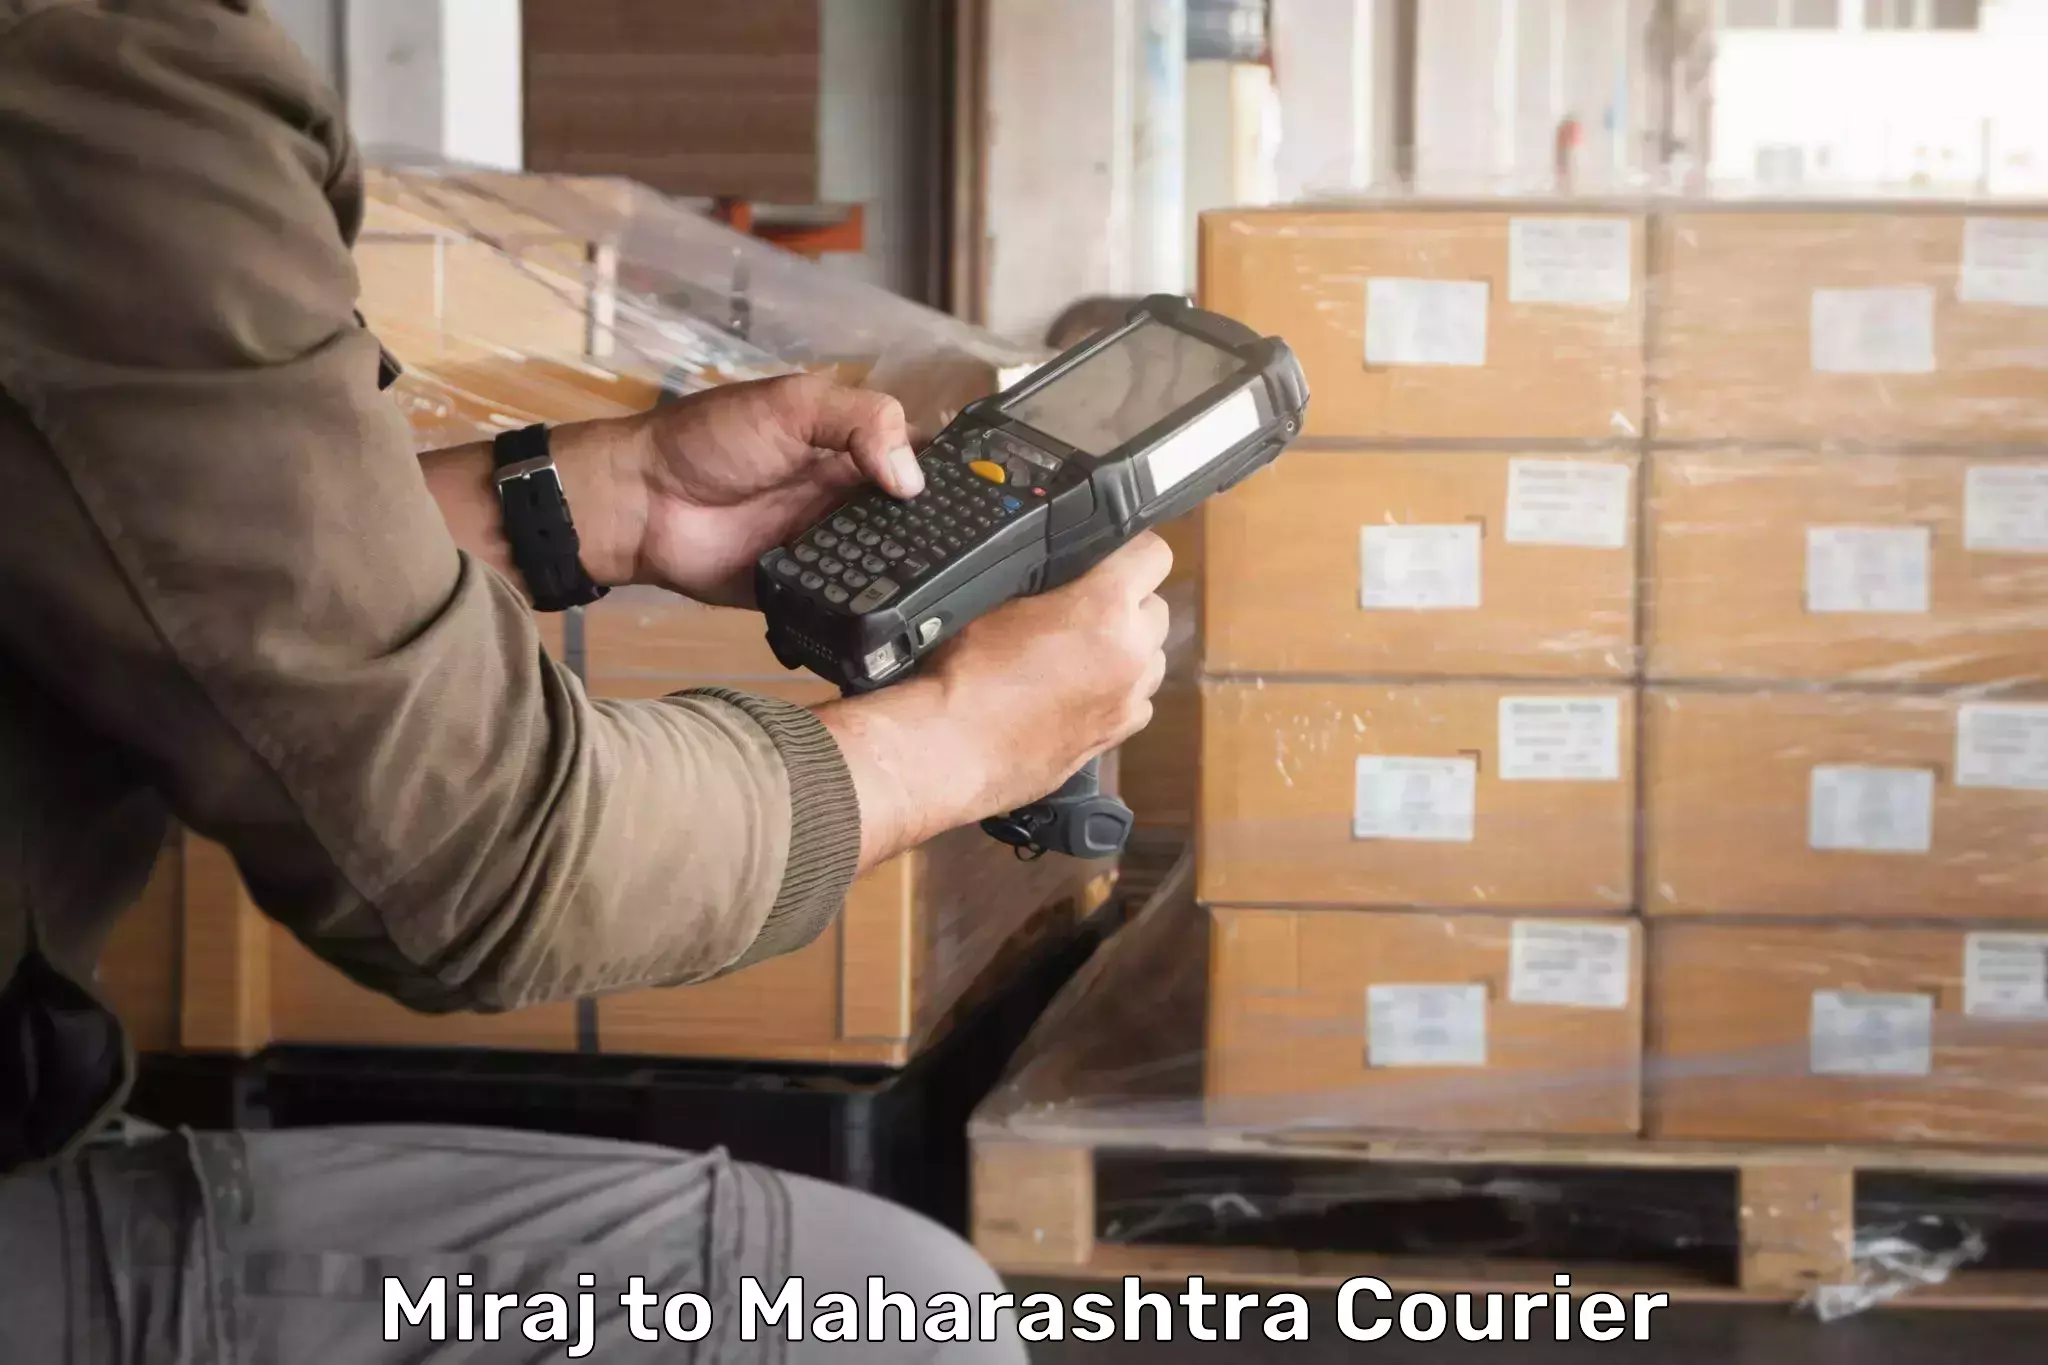 Lightweight courier Miraj to Vaijapur